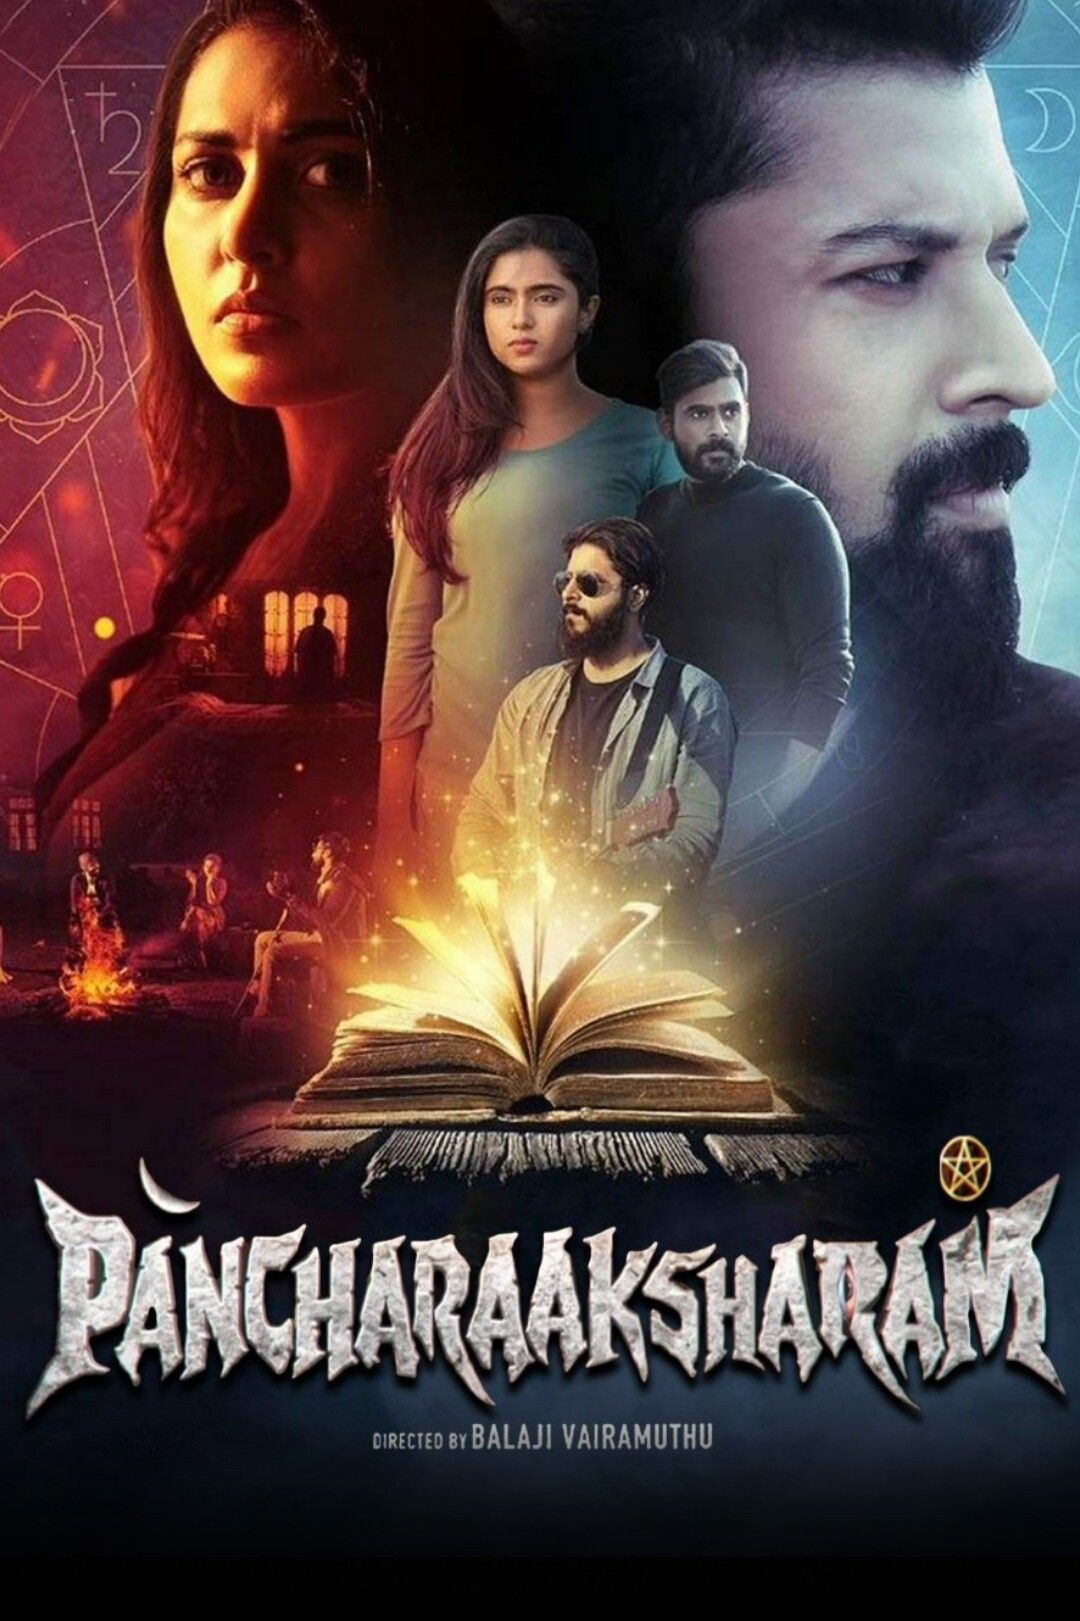 Pancharaaksharam (2021) Hindi Dubbed HDRip download full movie